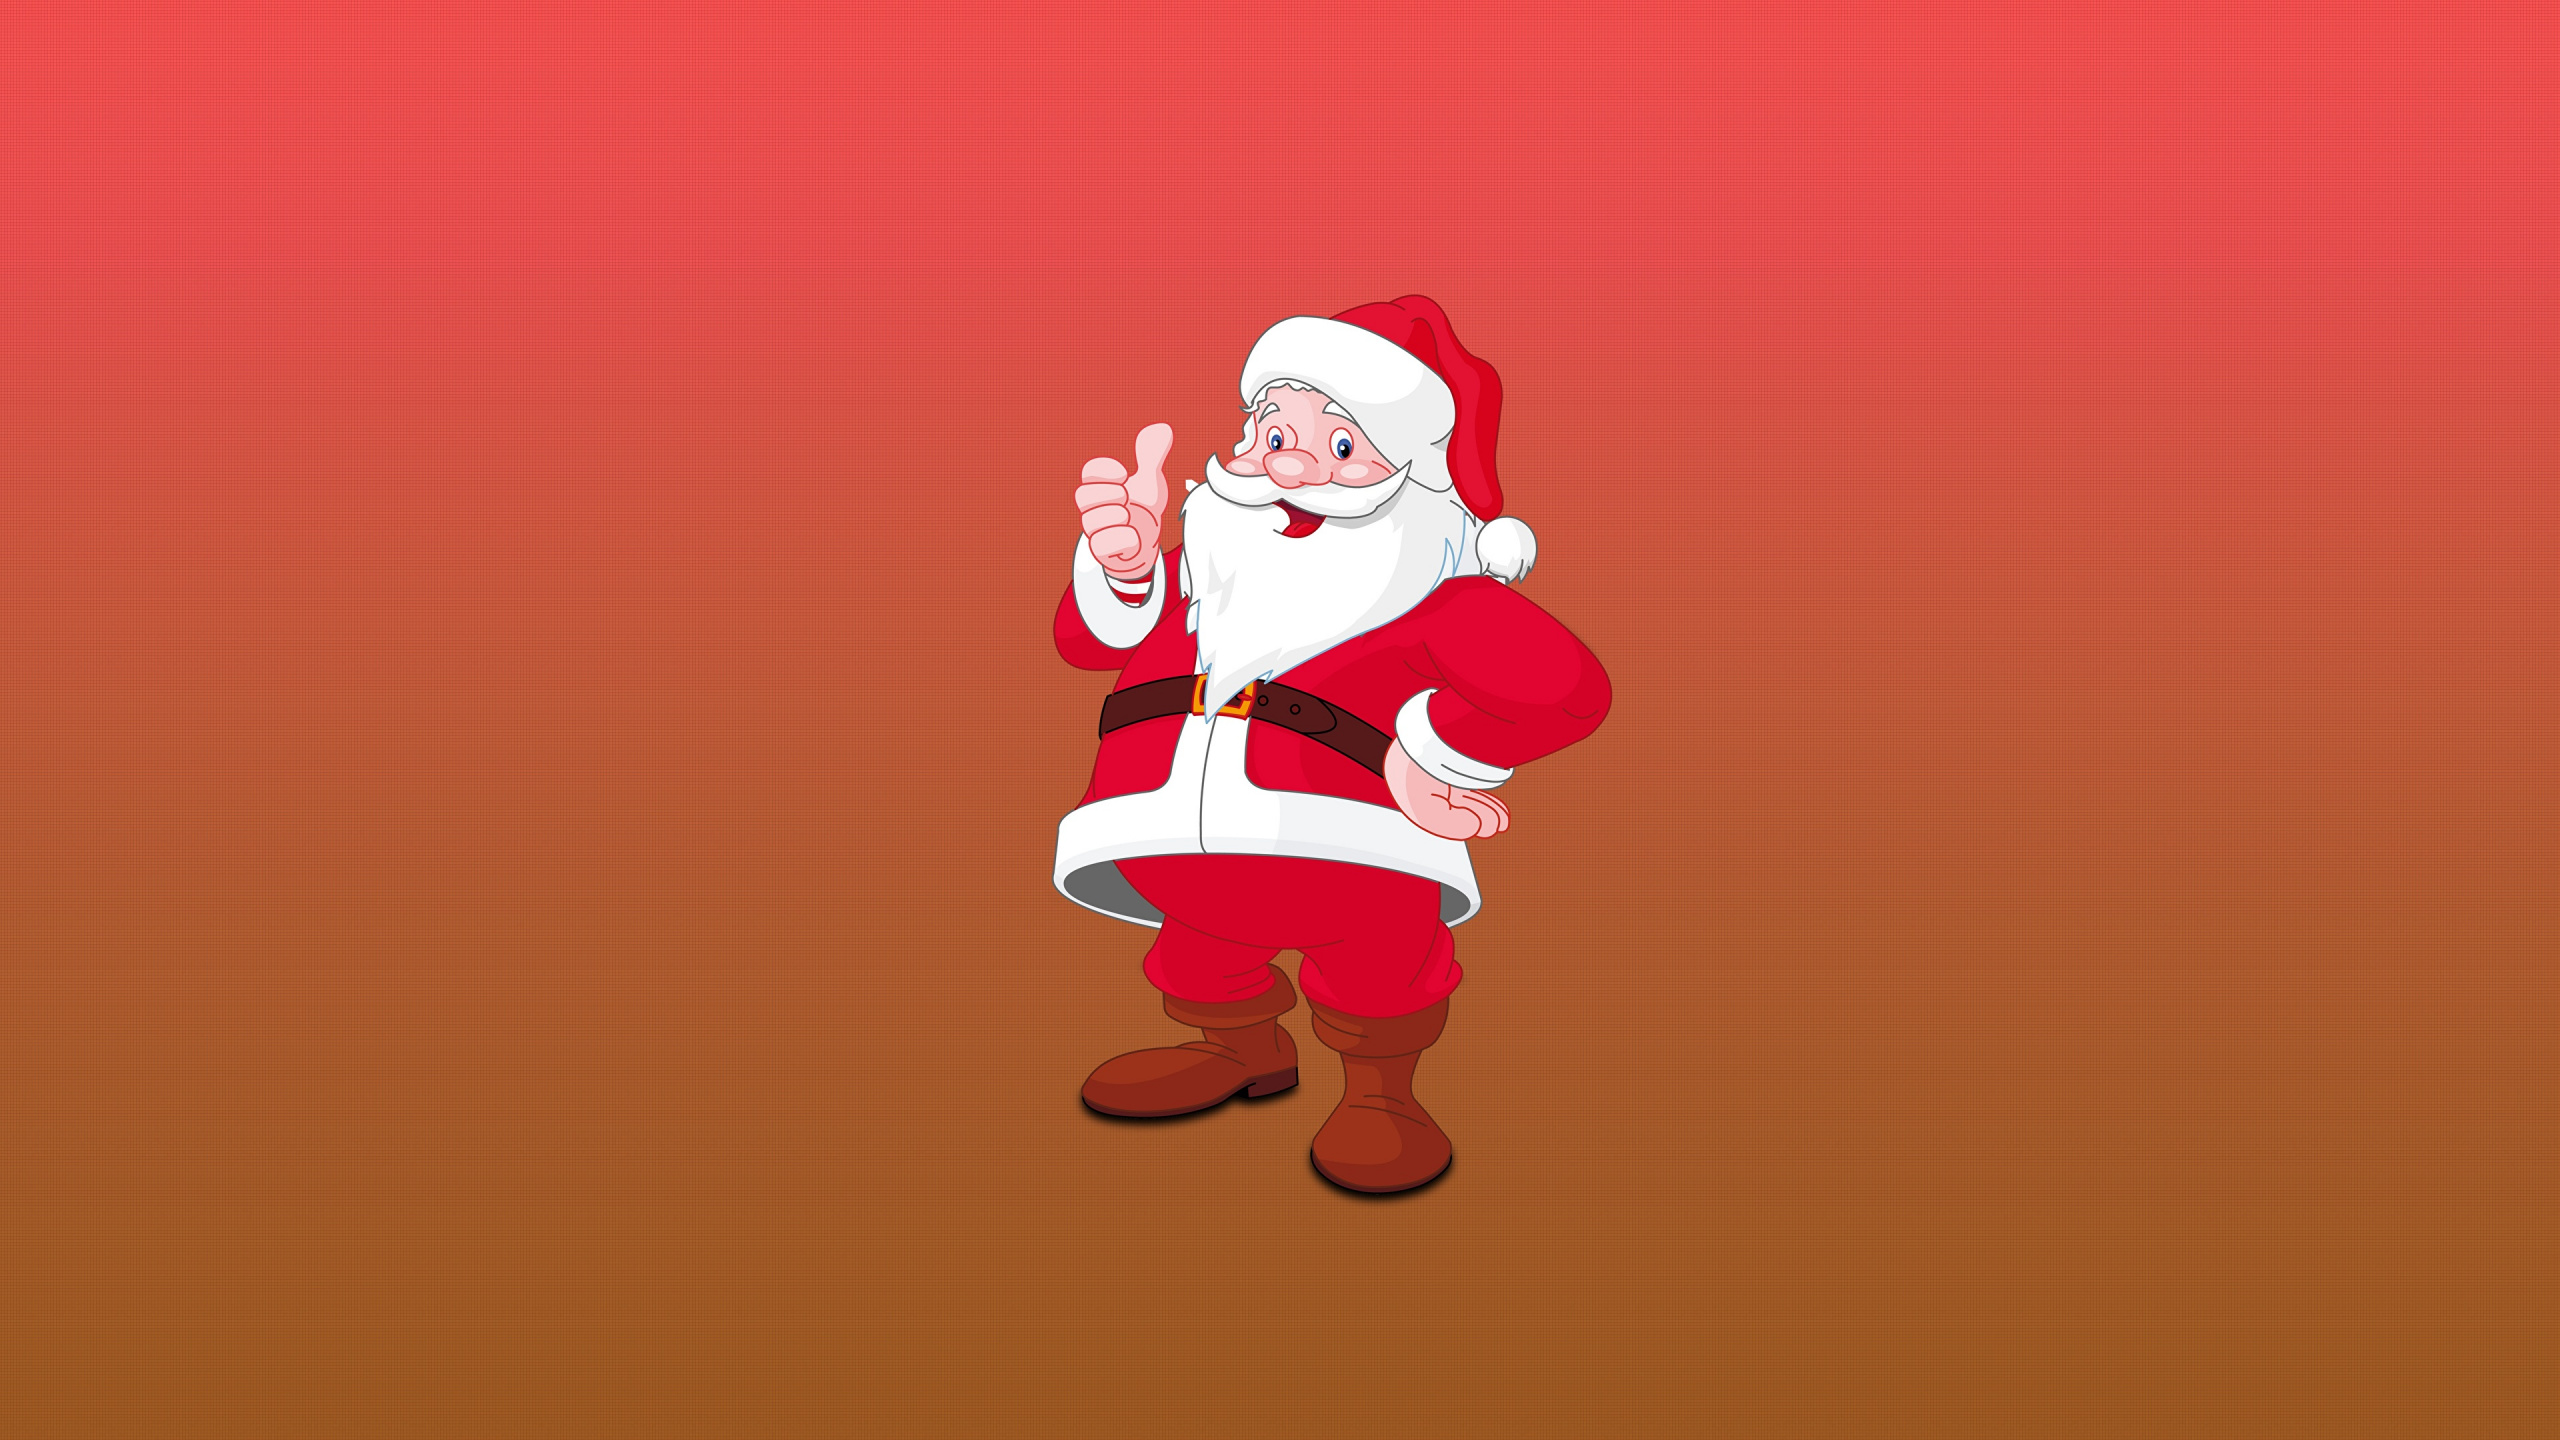 Weihnachtsmann, Illustration, Ded Moroz, Weihnachten, Kunst. Wallpaper in 2560x1440 Resolution